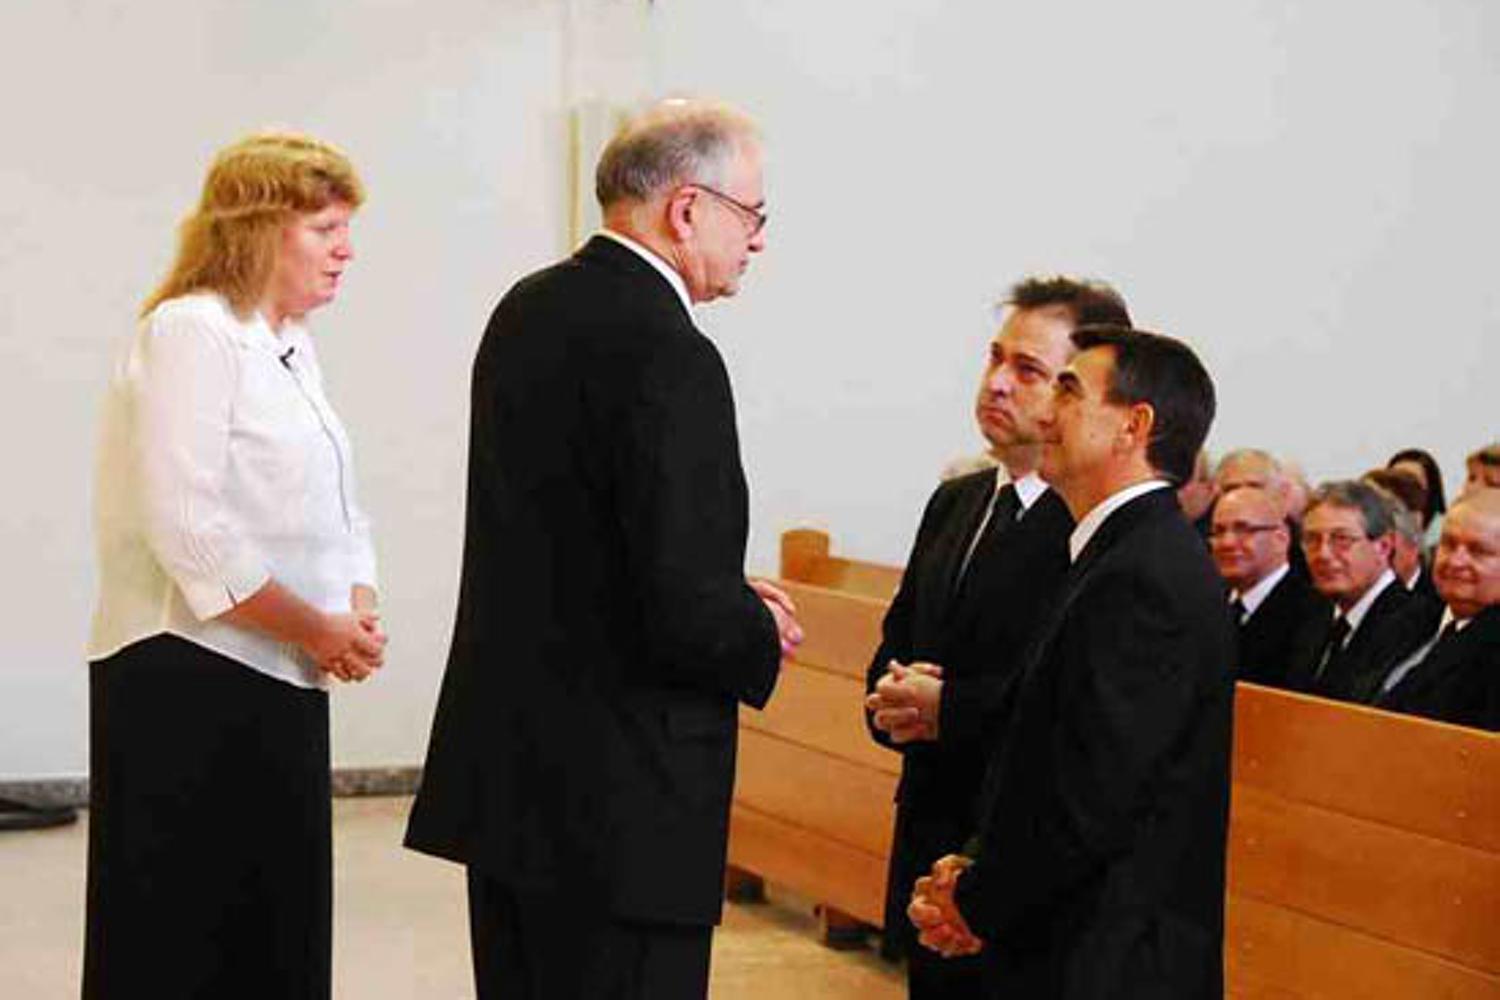 Stammapostel Leber ordiniert einen Apostel und einen Bischof (Fotos: INA Súd)